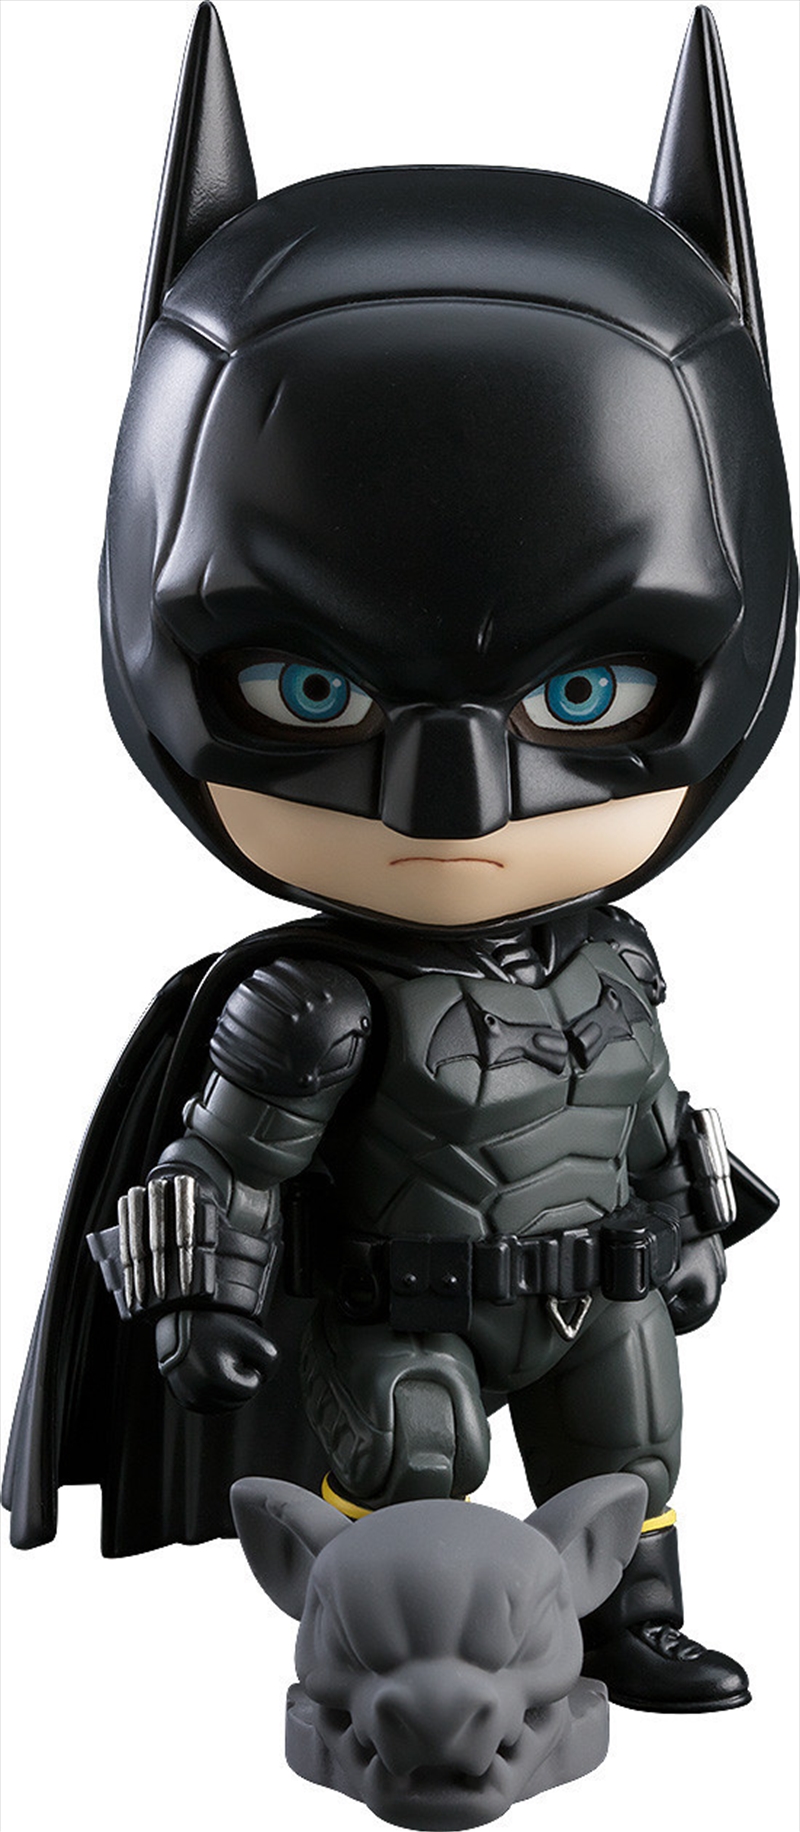 The Batman Nendoroid Batman the Batman Version/Product Detail/Figurines